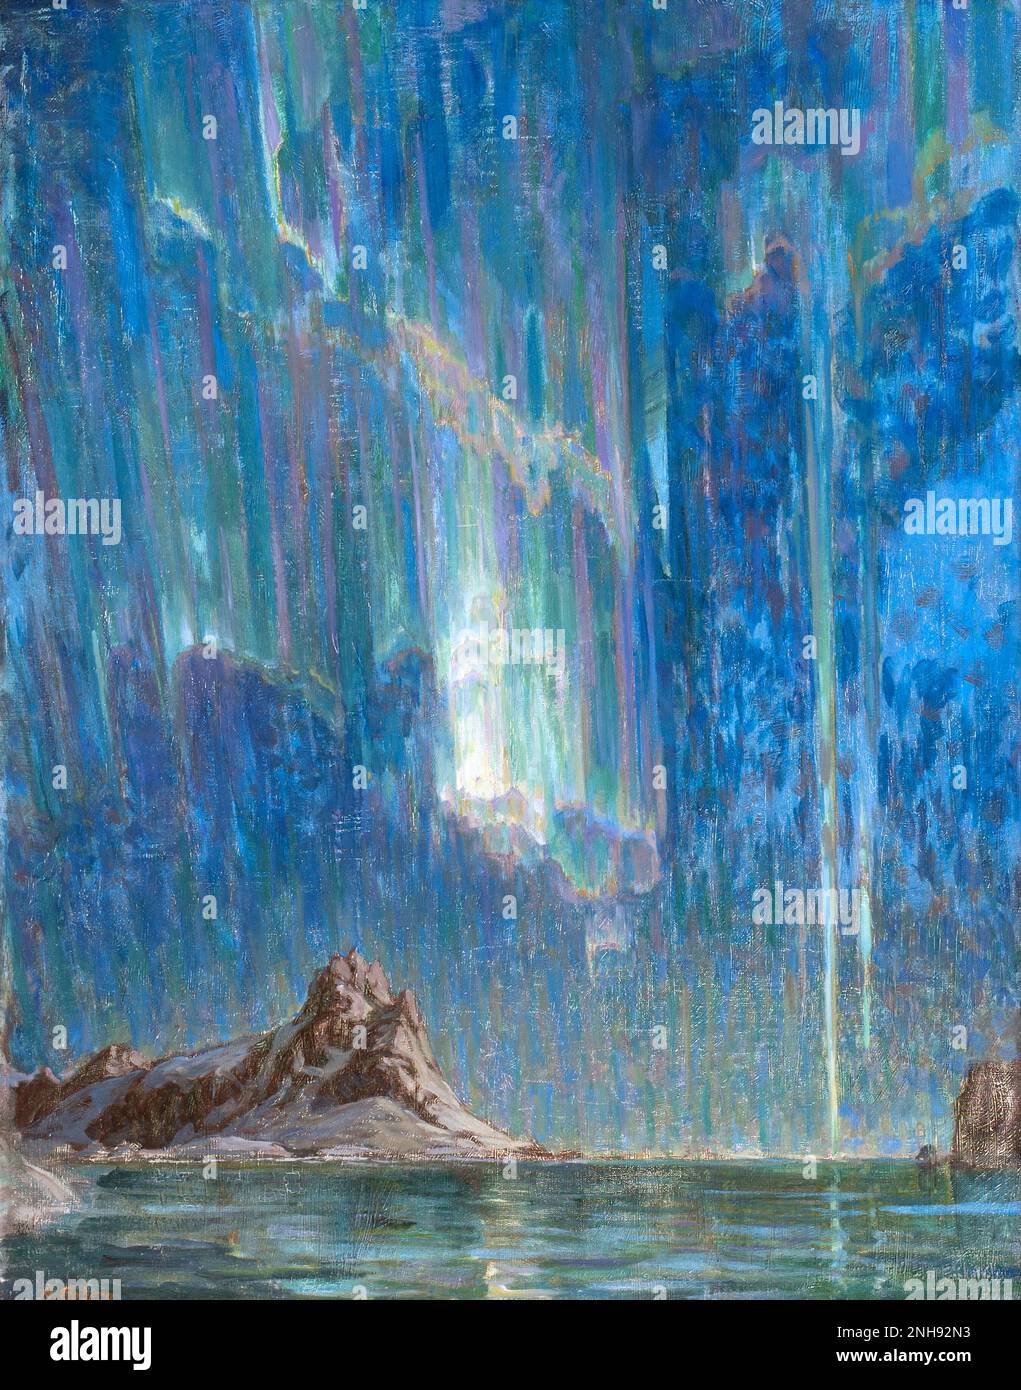 Auroras boreales, estudio del norte de Noruega. Óleo sobre lienzo, de la artista sueca Anna Boberg (1864-1935). Sin fecha. Foto de stock